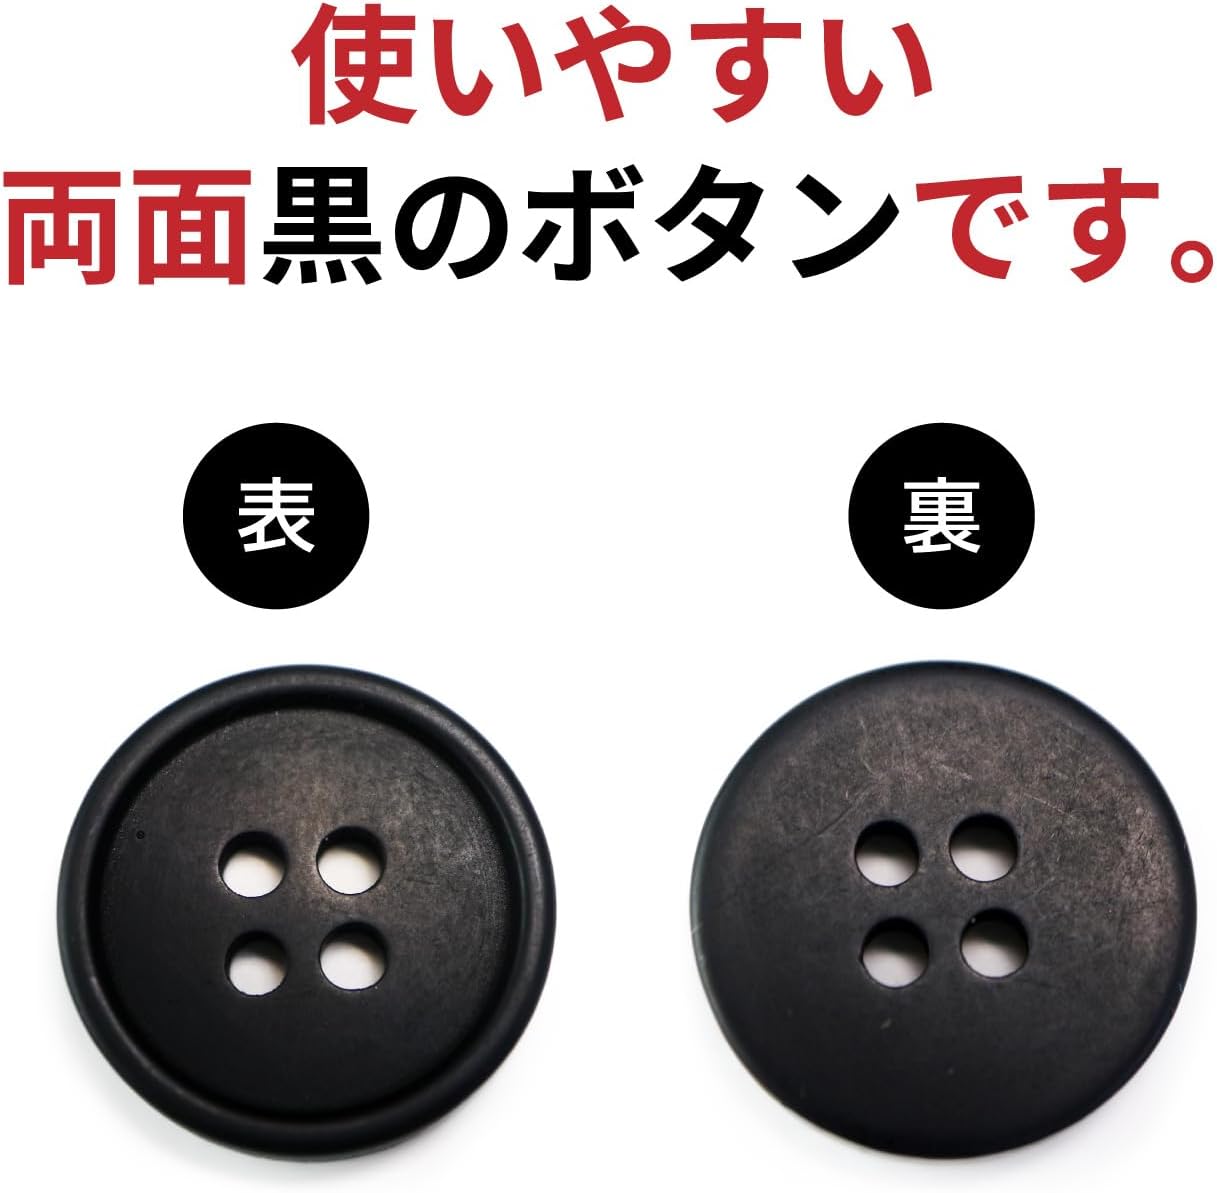 スーツボタン 黒ボタン【ブラック ツヤなし】ジャケット ブレザー 四つ